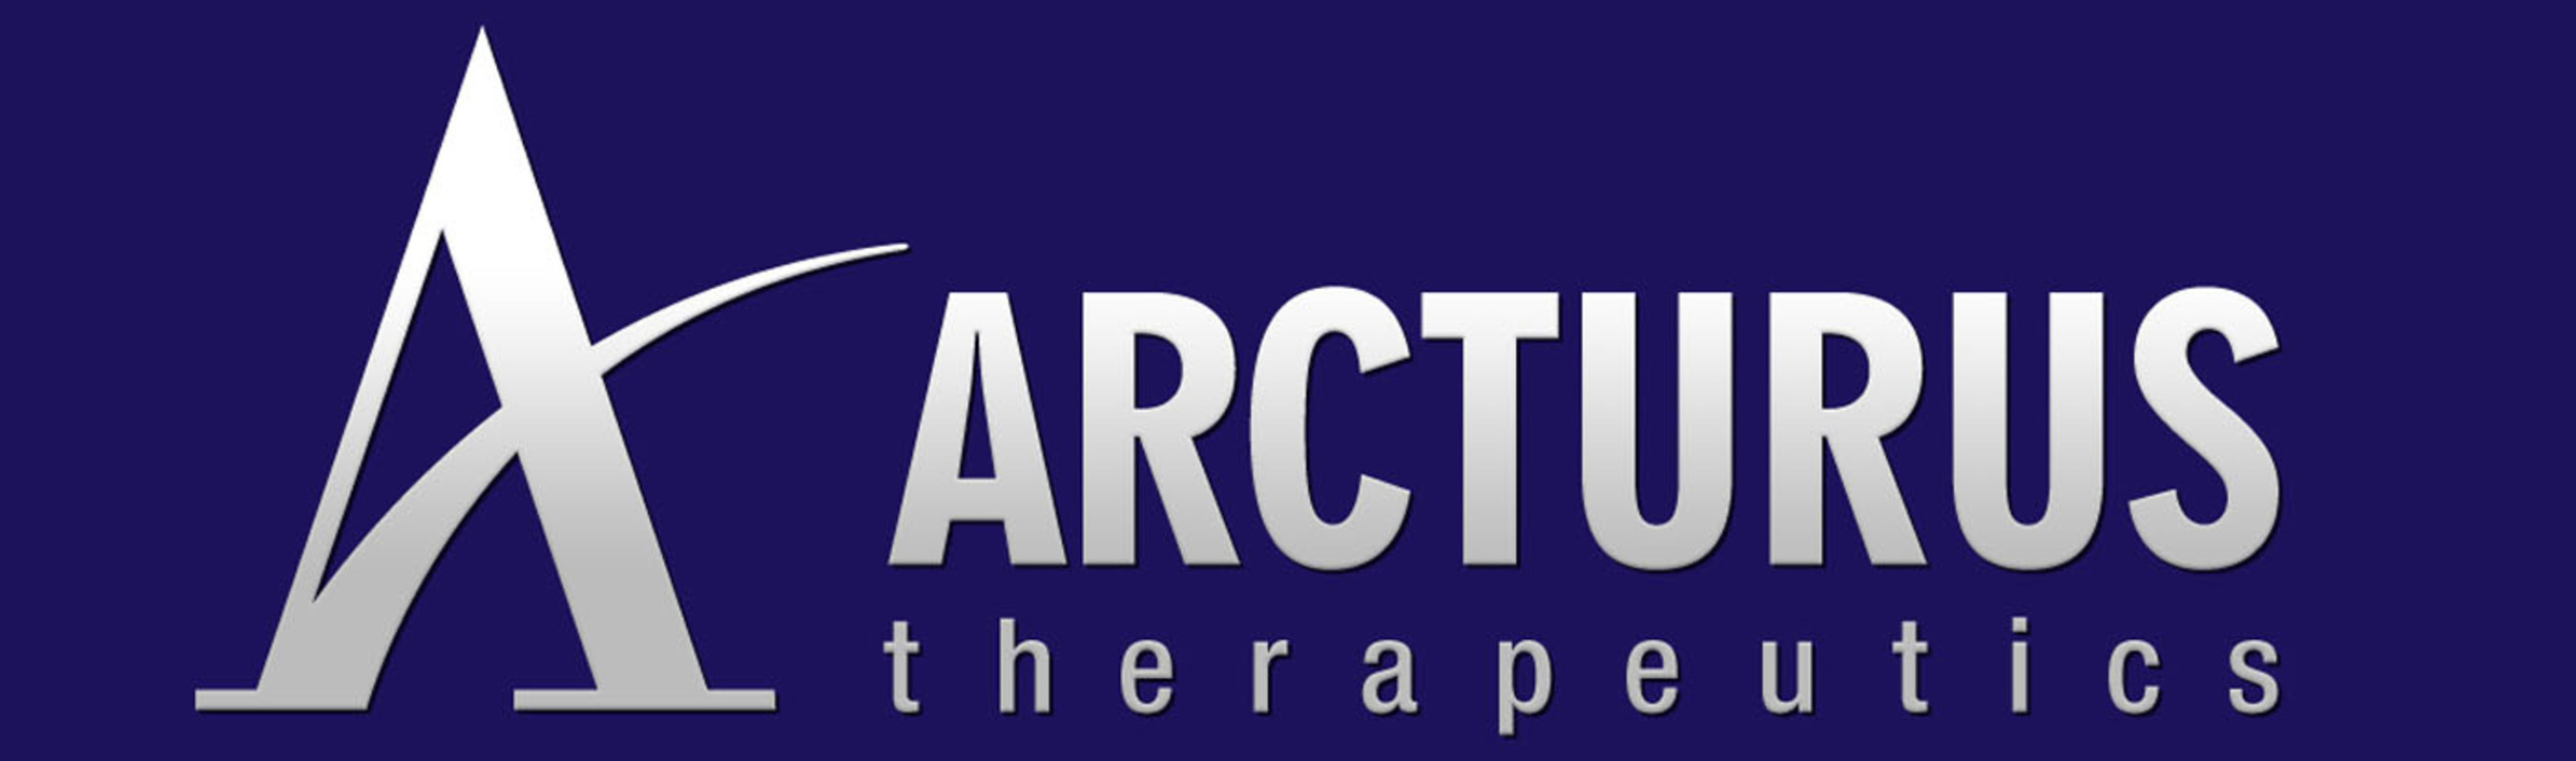 Arcturus Therapeutics Logo.